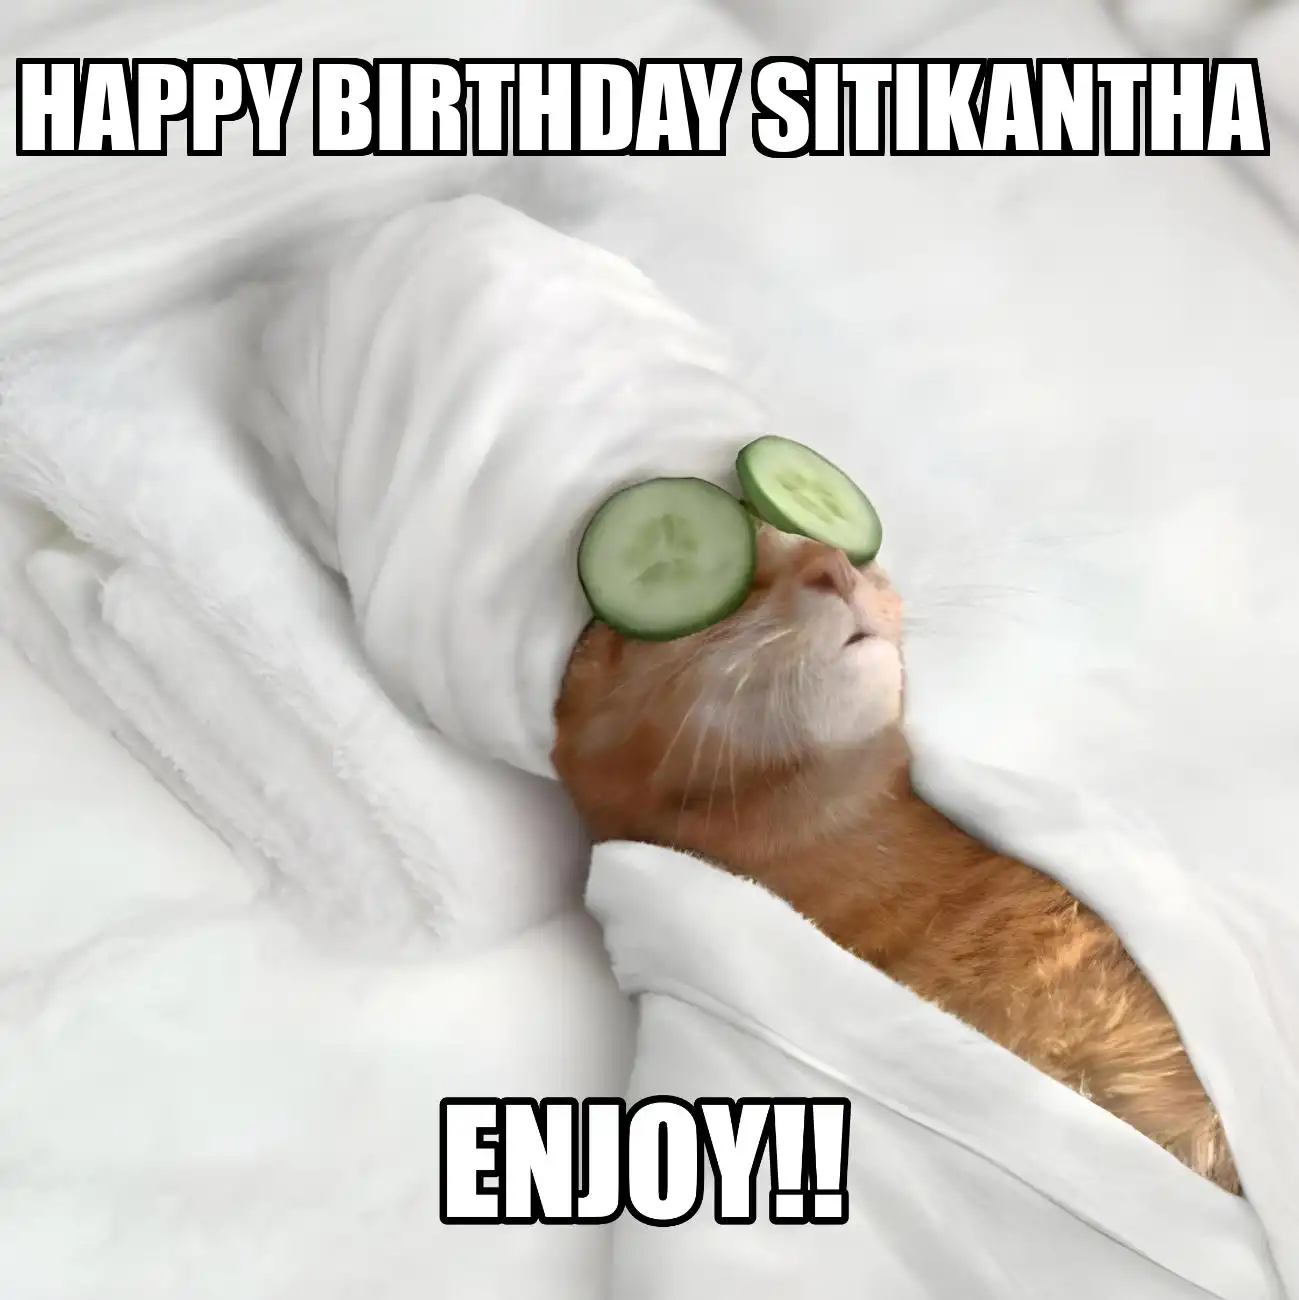 Happy Birthday Sitikantha Enjoy Cat Meme